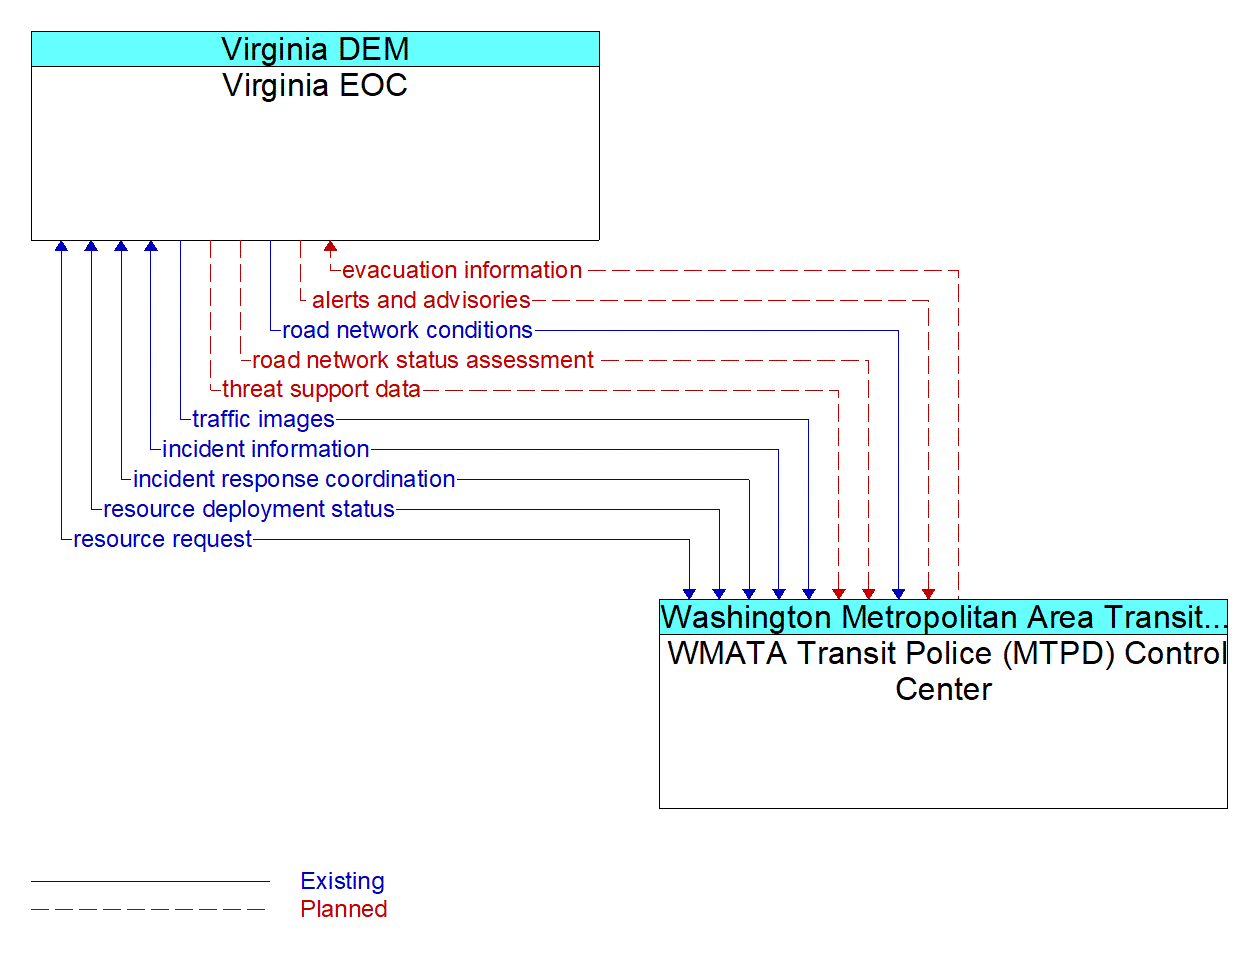 Architecture Flow Diagram: WMATA Transit Police (MTPD) Control Center <--> Virginia EOC